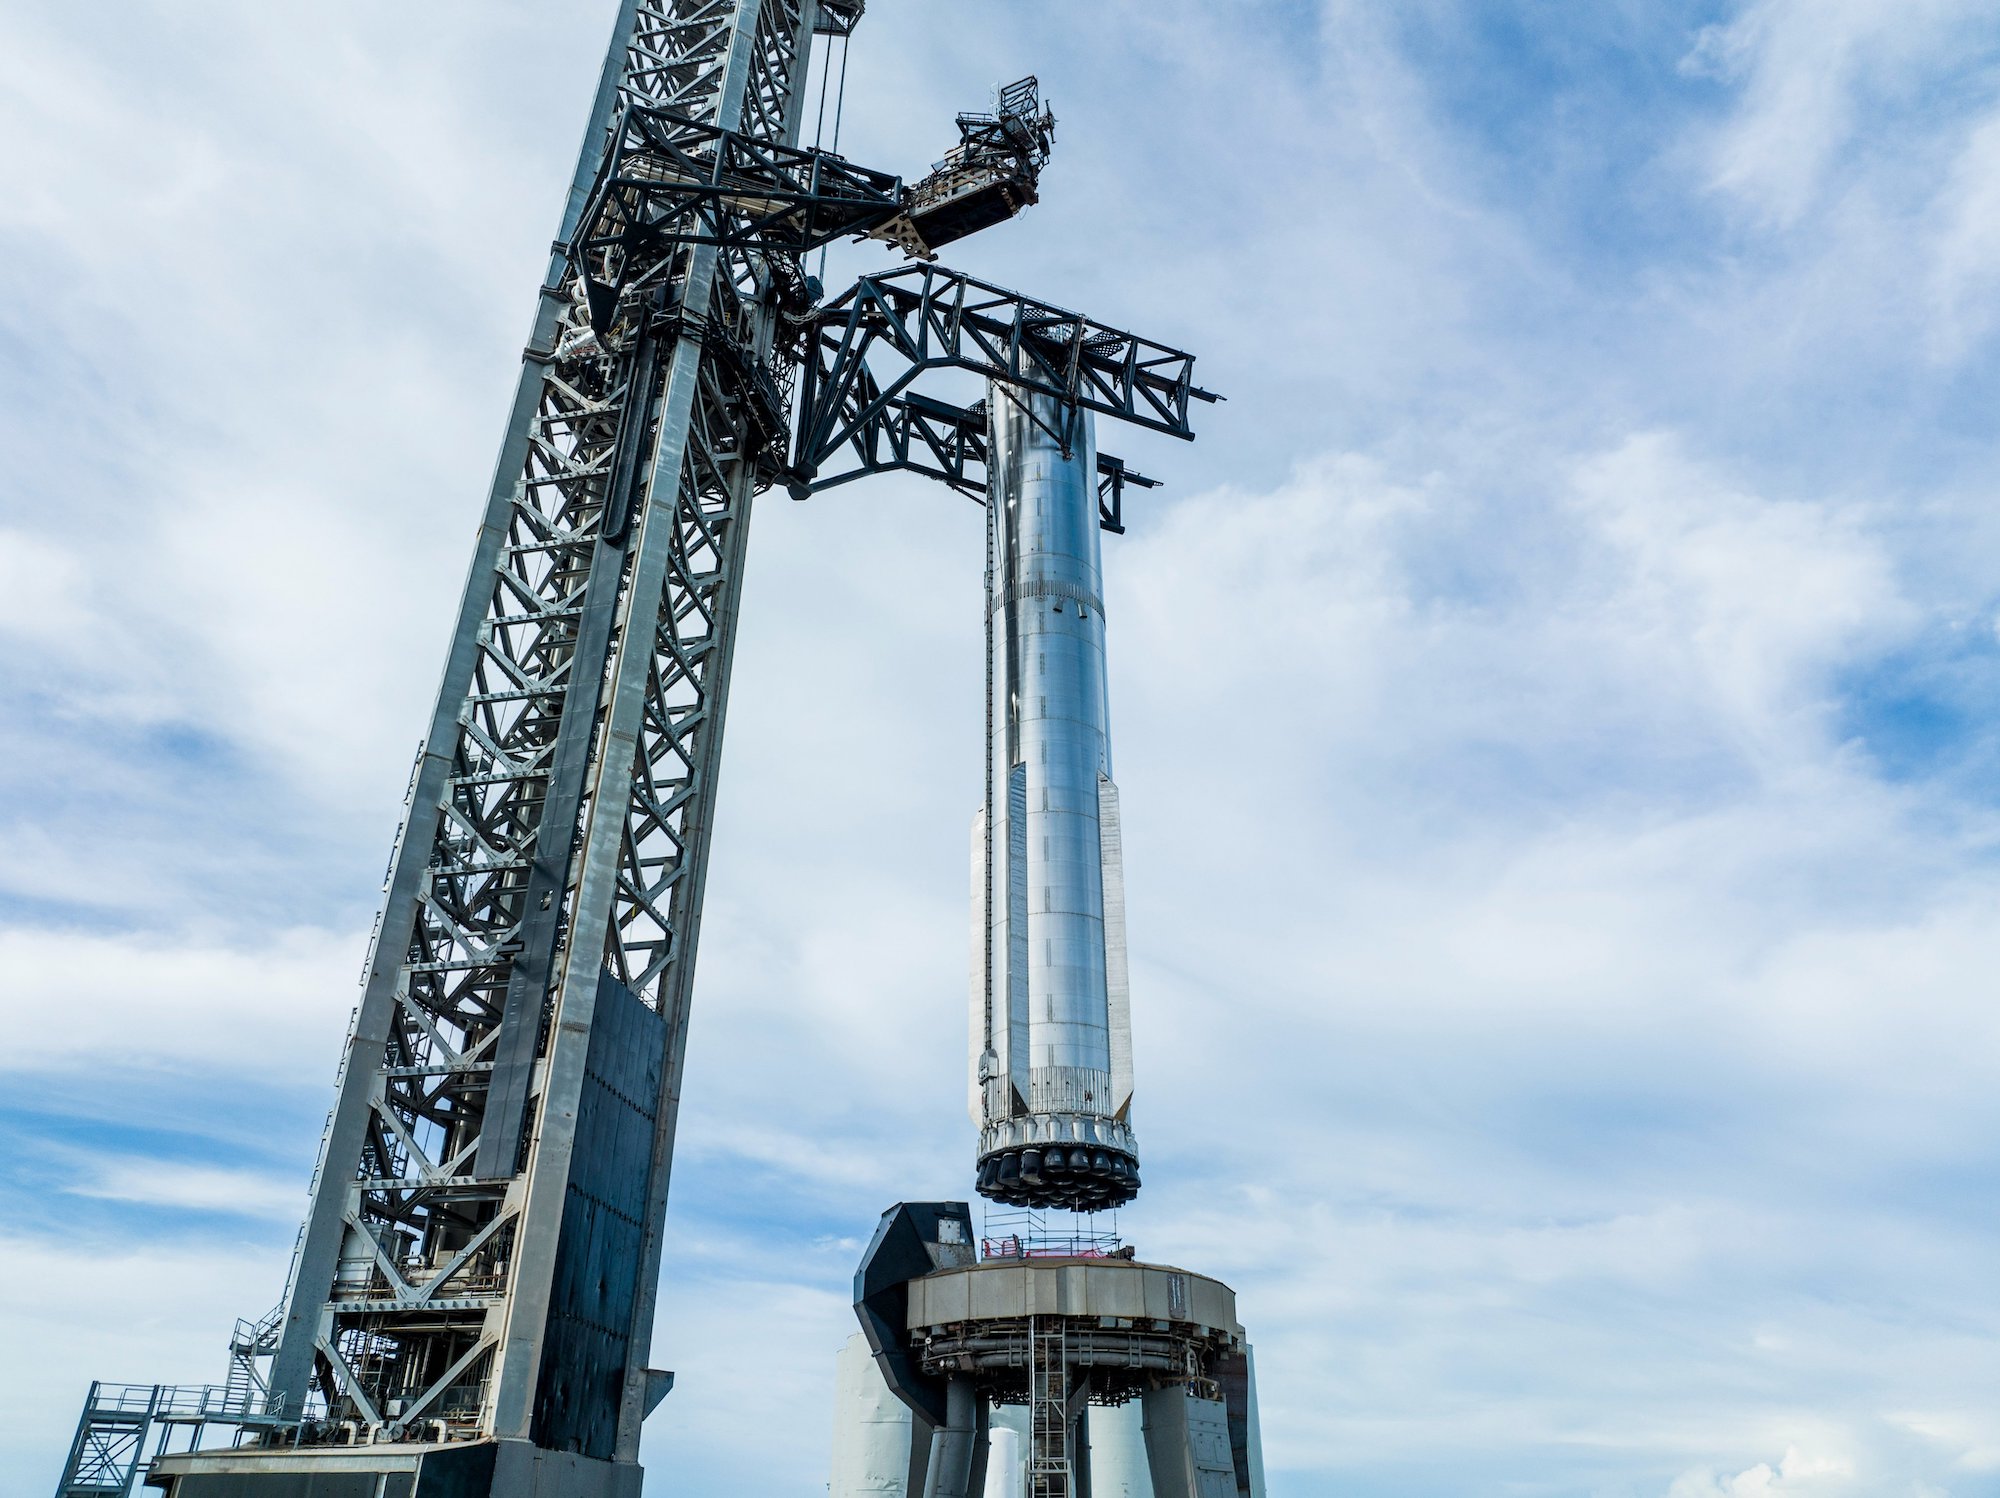 SpaceXs Super Heavy auf der Startrampe vor einem Test.